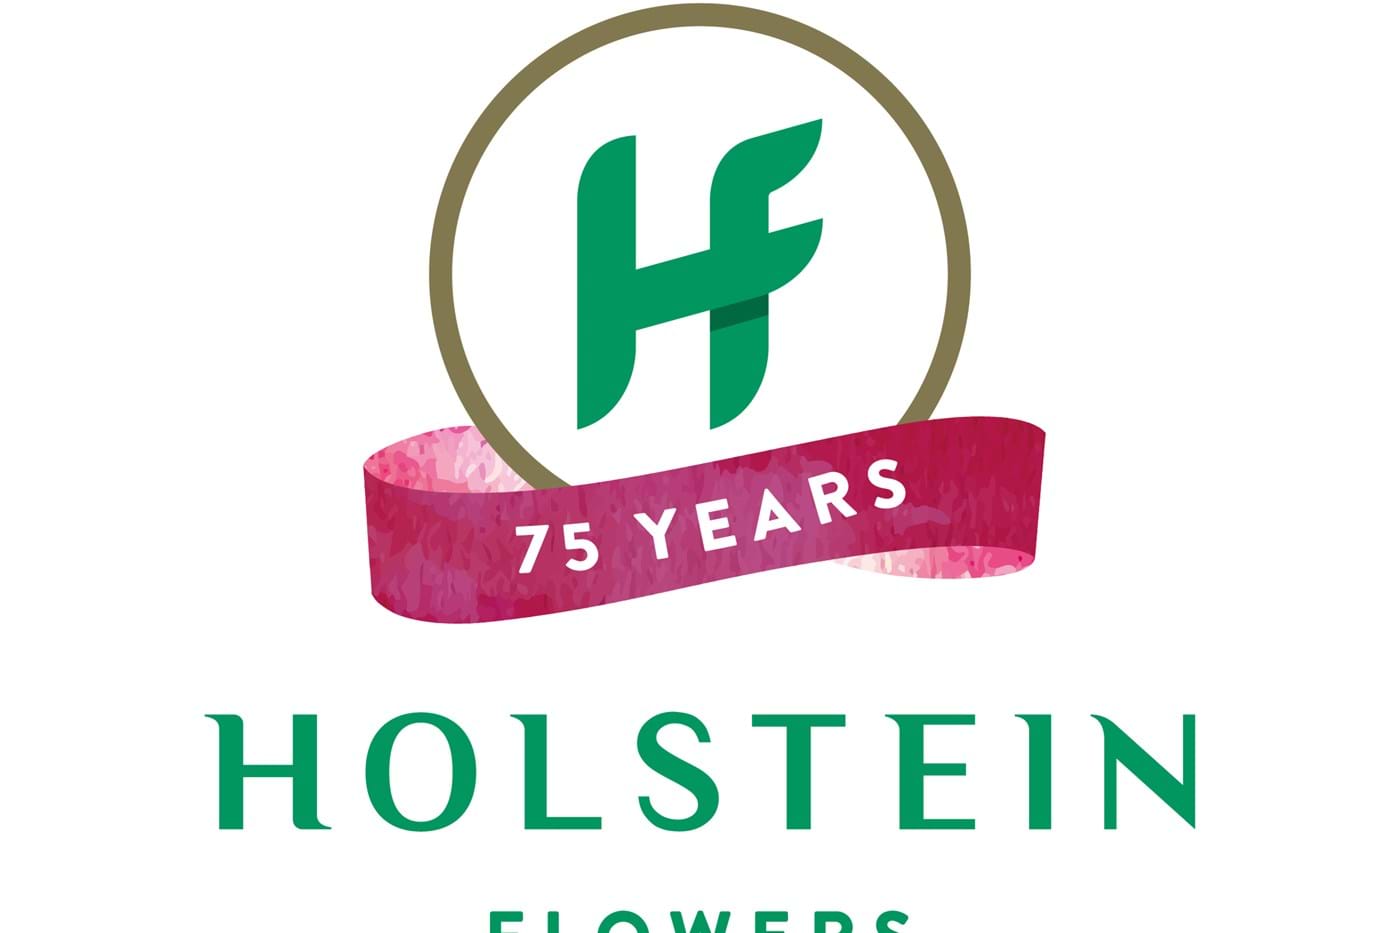 Holstein Flowers 75 Jahre!